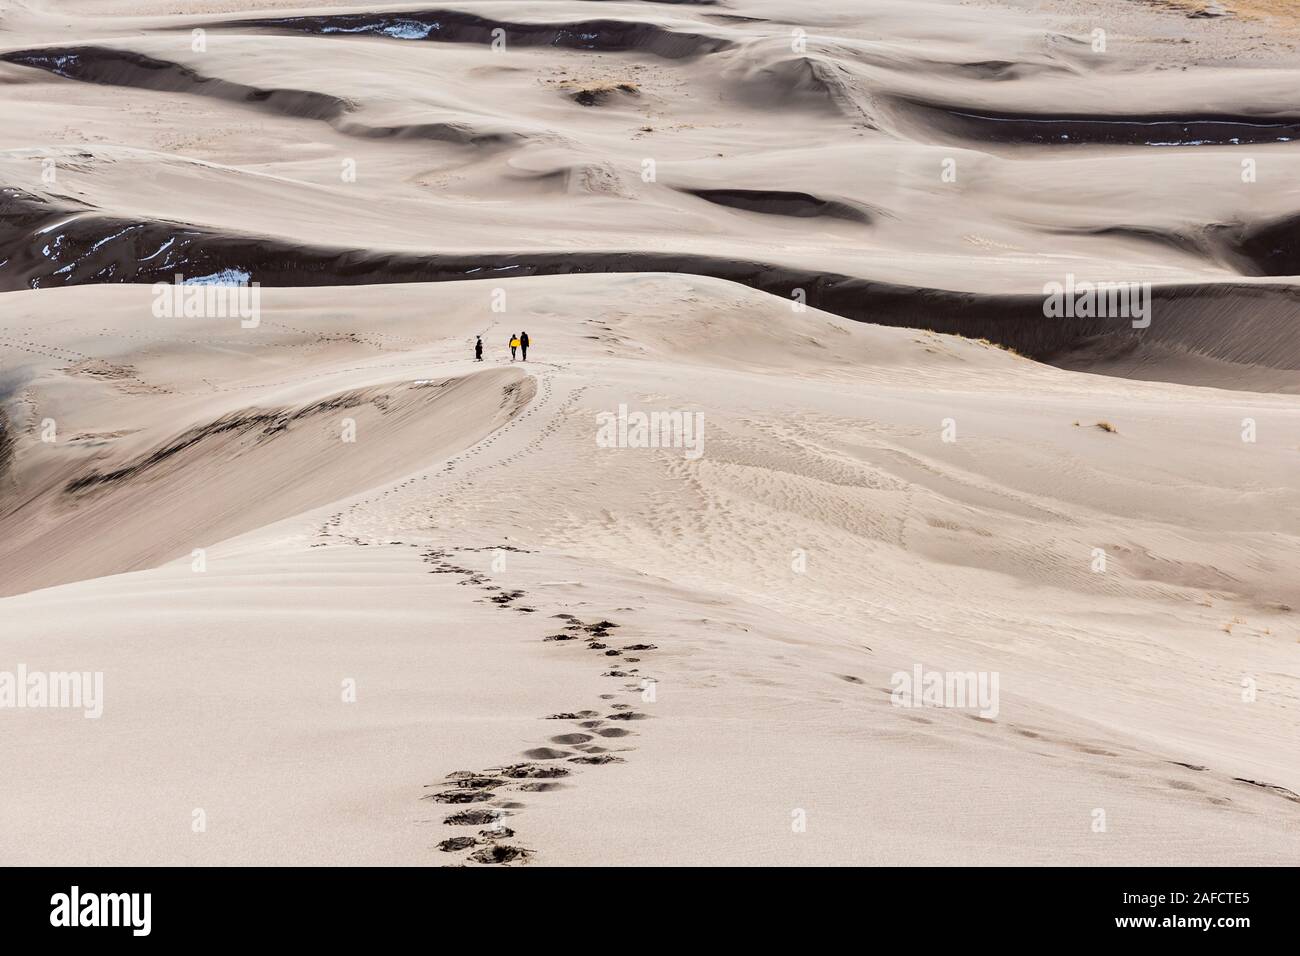 Vue paysage de dunes au Great Sand Dunes National Park en Californie, la plus haute des dunes de sable en Amérique du Nord. Banque D'Images